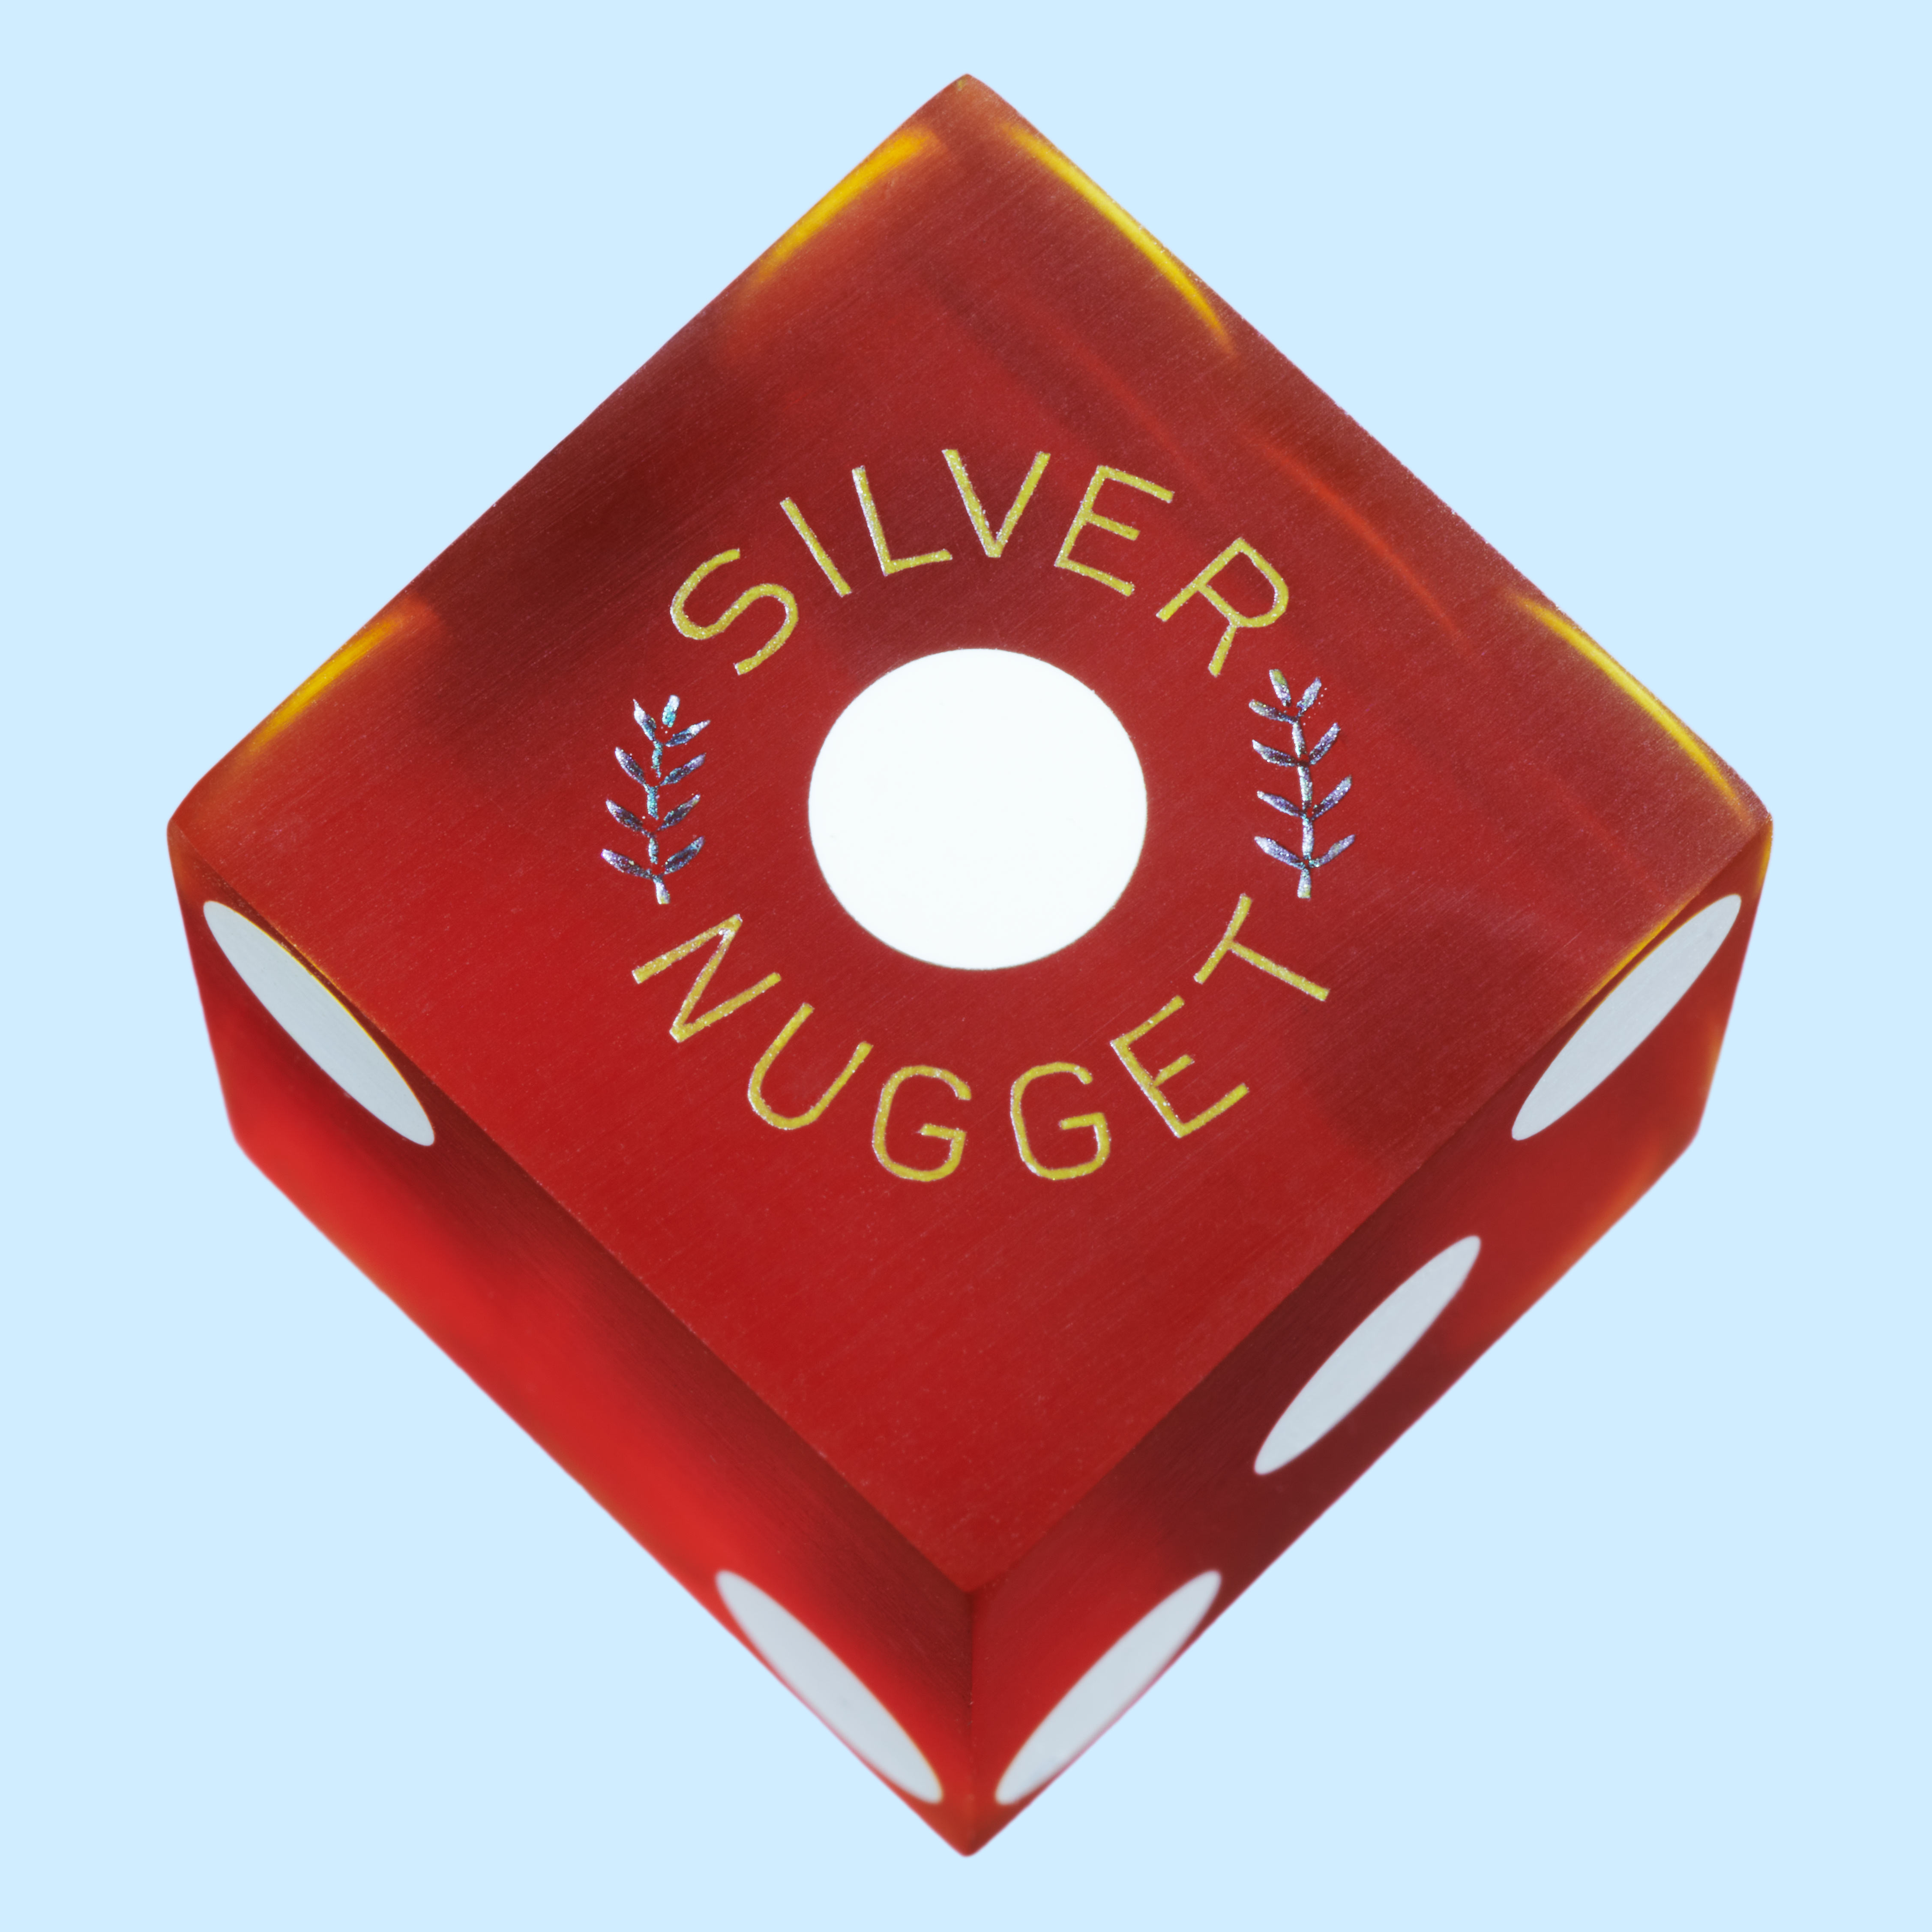 Silver_Nugget_2B